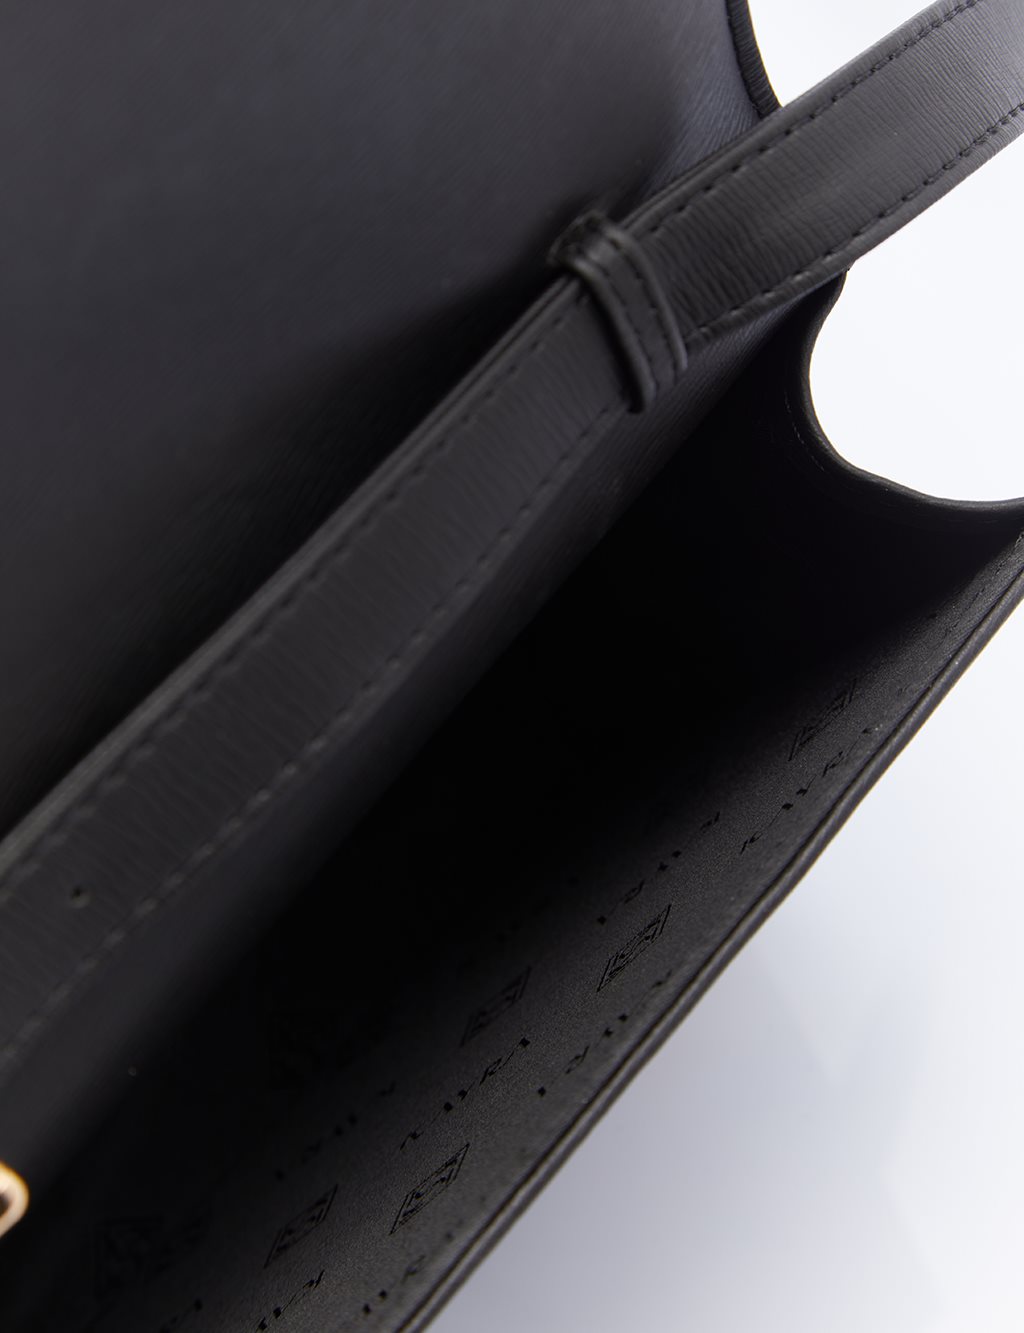 Adjustable Strap Cover Bag Black